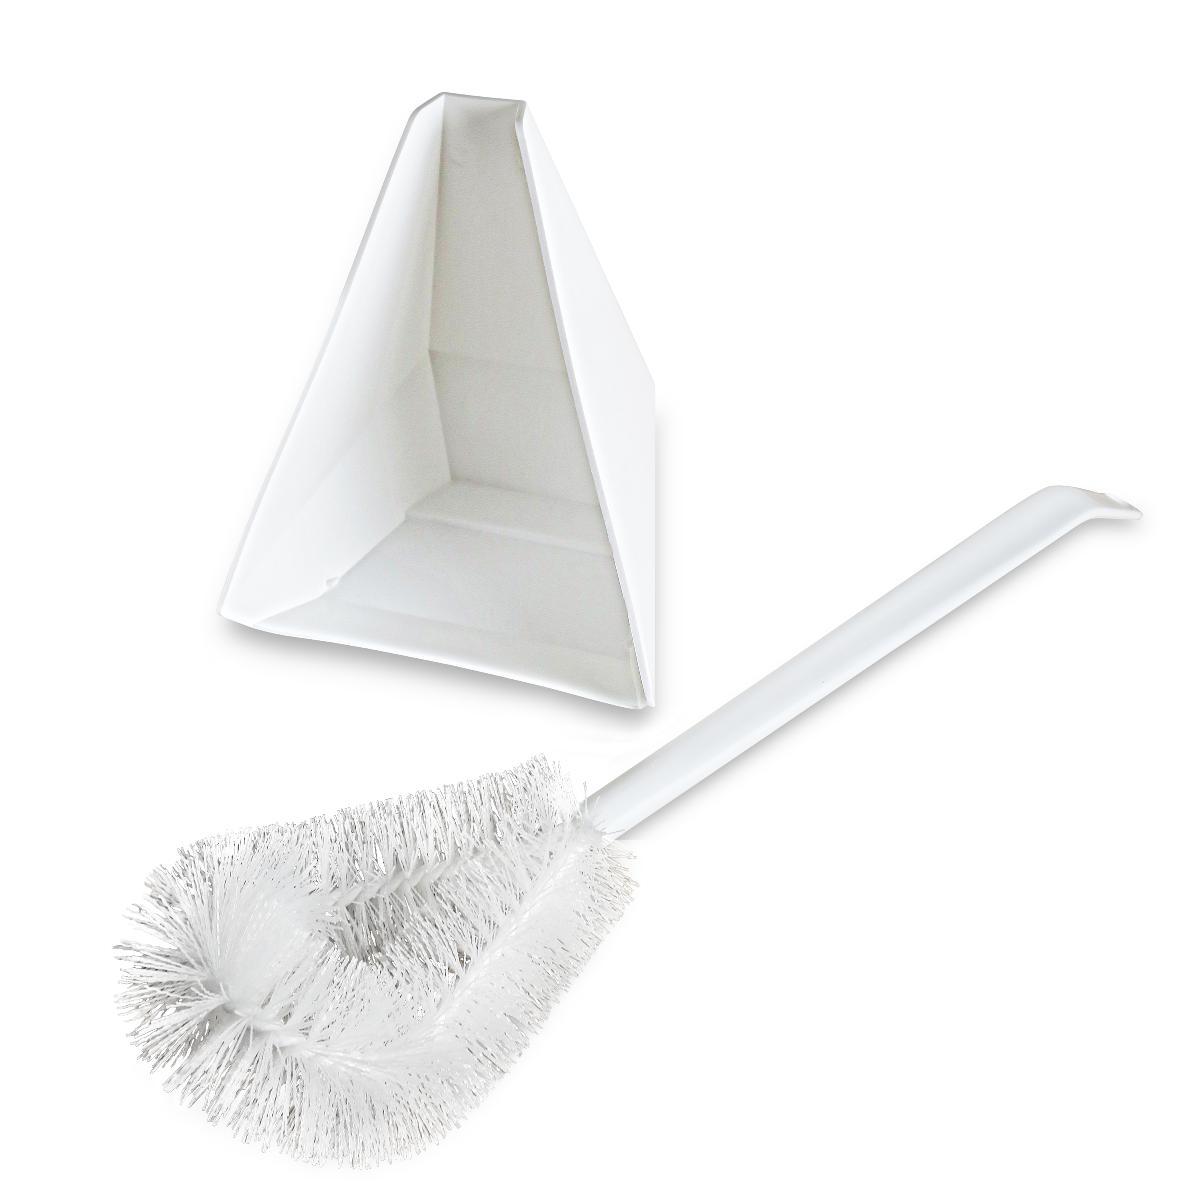 Bent Tip Toilet Bowl Brush And Holder Kit-Cleaning Brushes-Fuller Brush Company